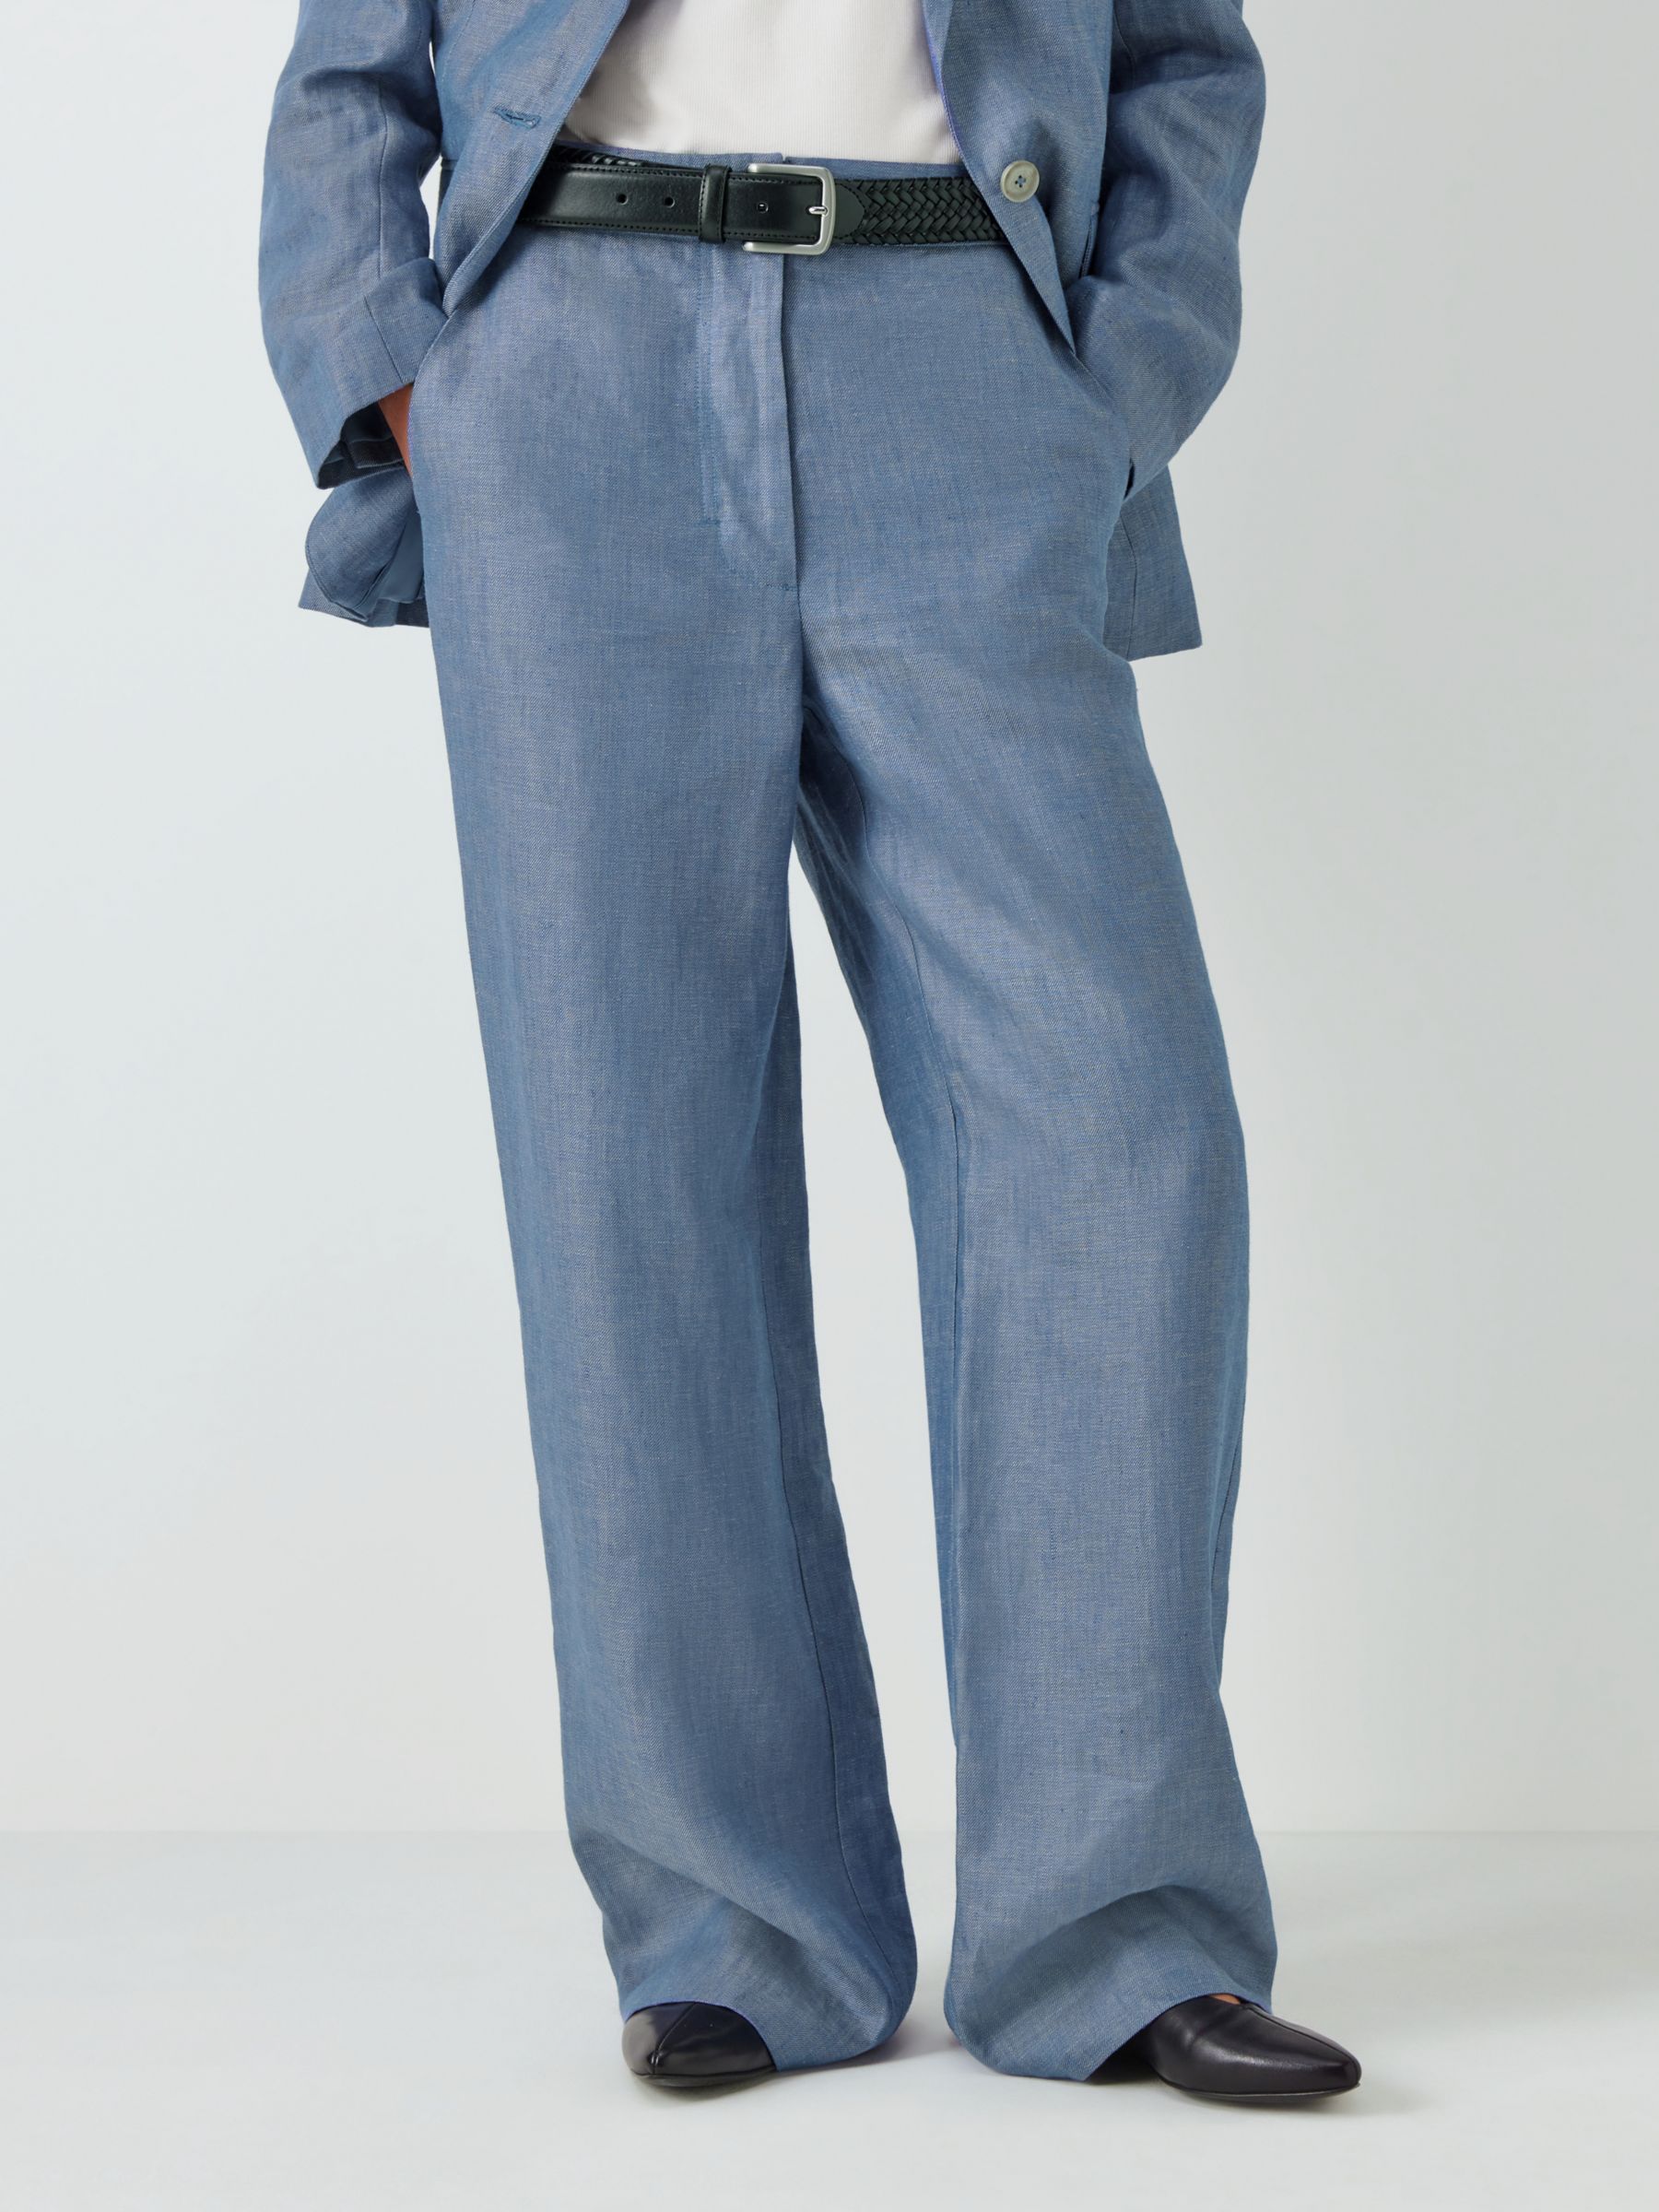 Beige Slim Leg Trousers - Smart Ladies Trousers - ADKN UK